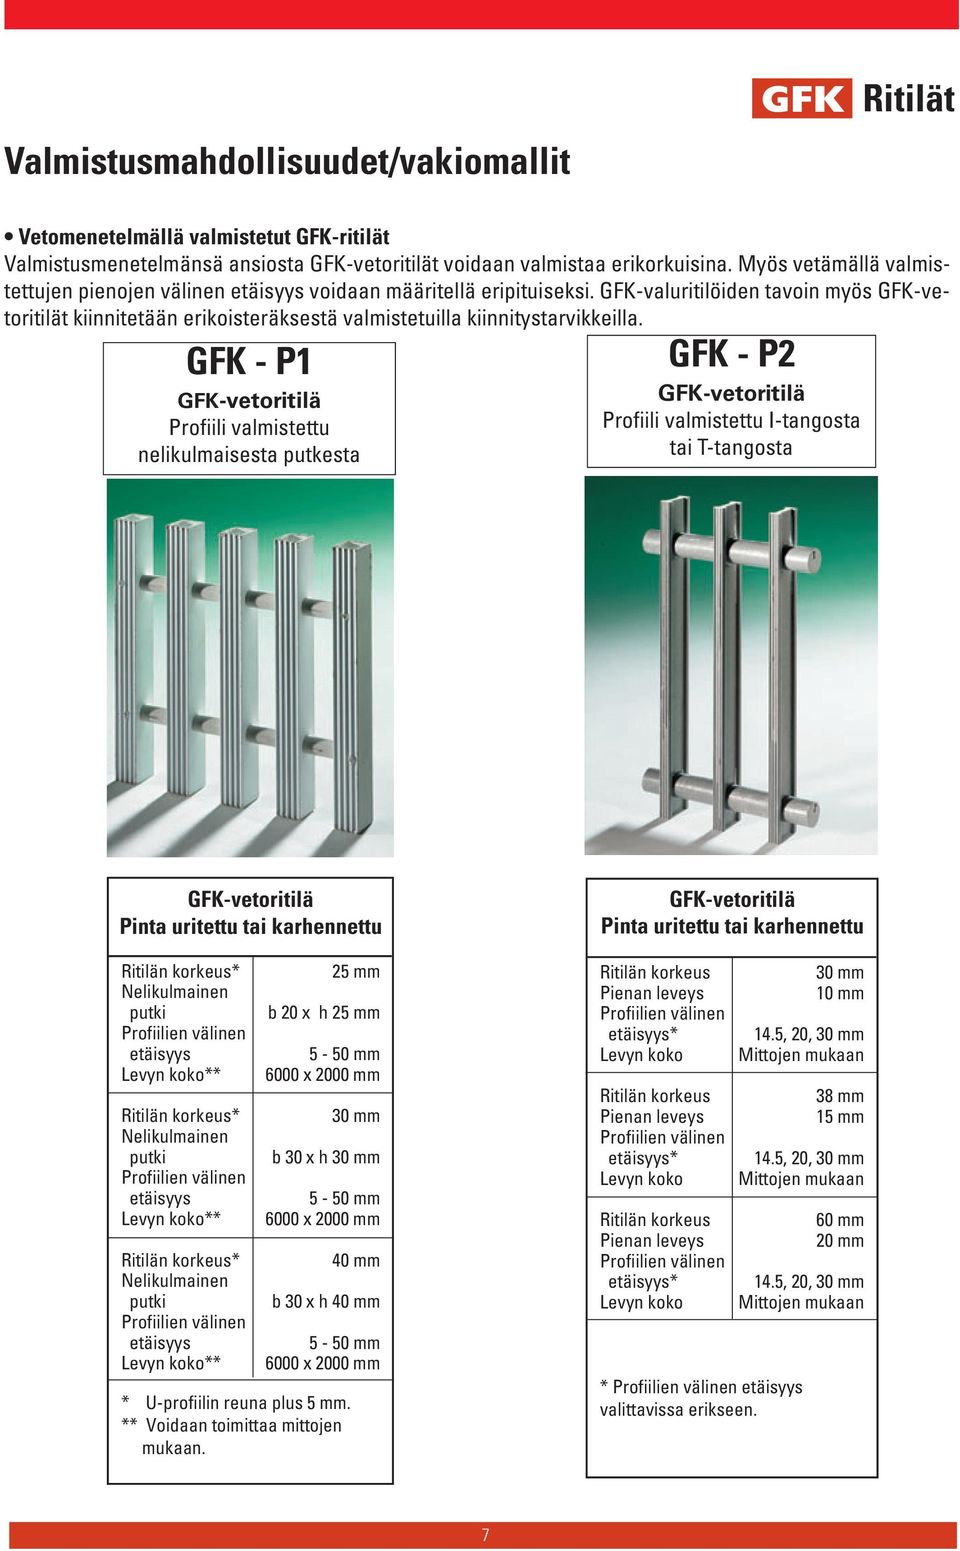 GFK-valuritilöiden tavoin myös GFK-vetoritilät kiinnitetään erikoisteräksestä valmistetuilla kiinnitystarvikkeilla.